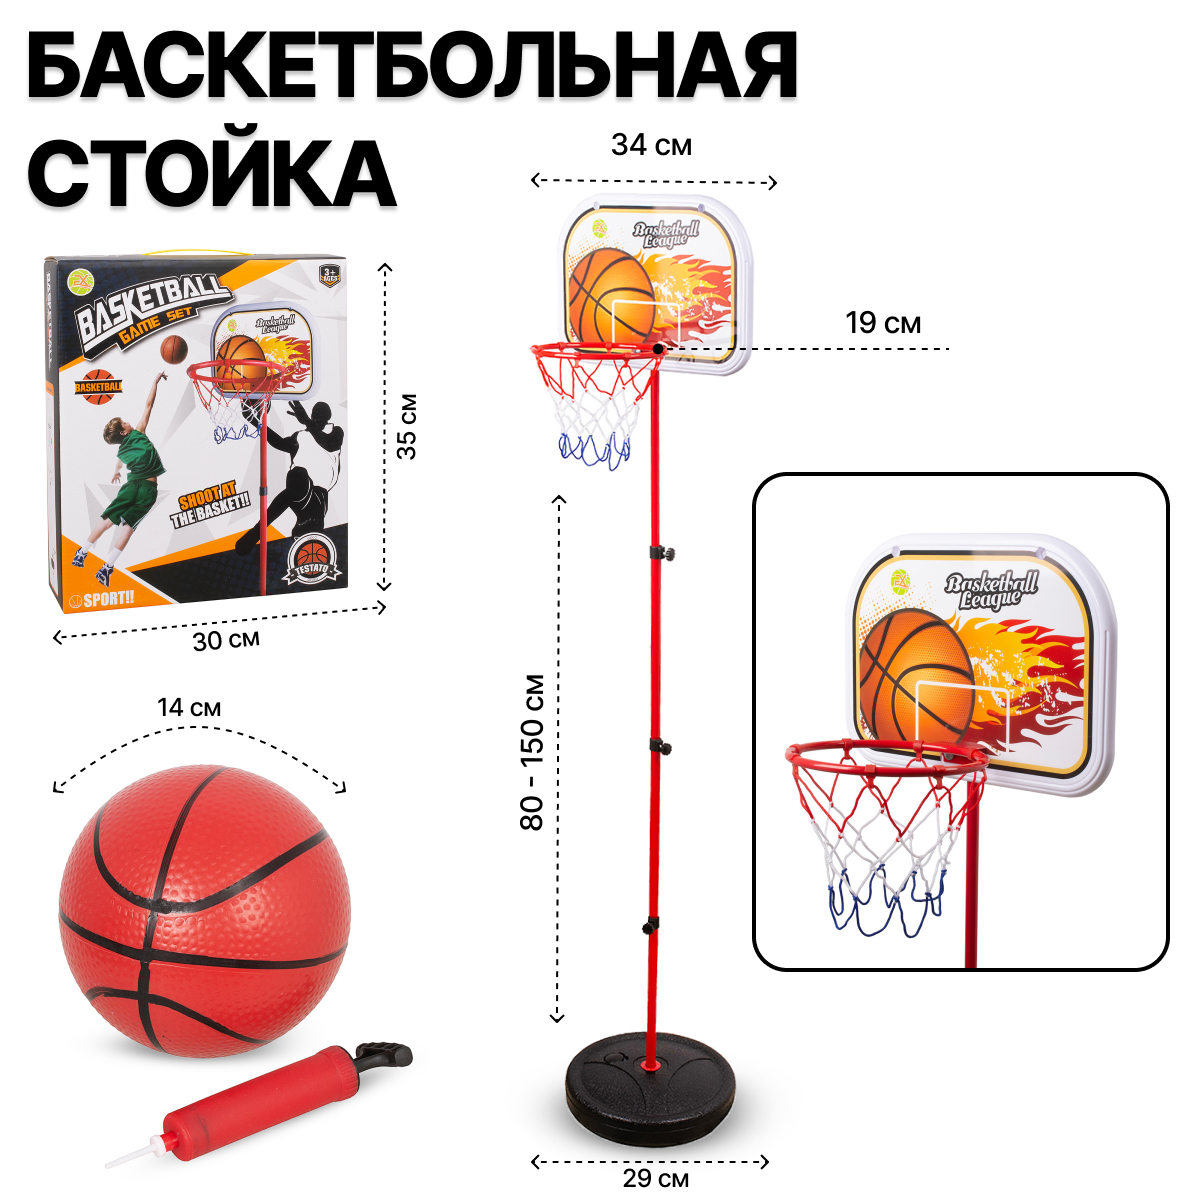 Баскетбольное кольцо FX666-2 на стойке 150 см